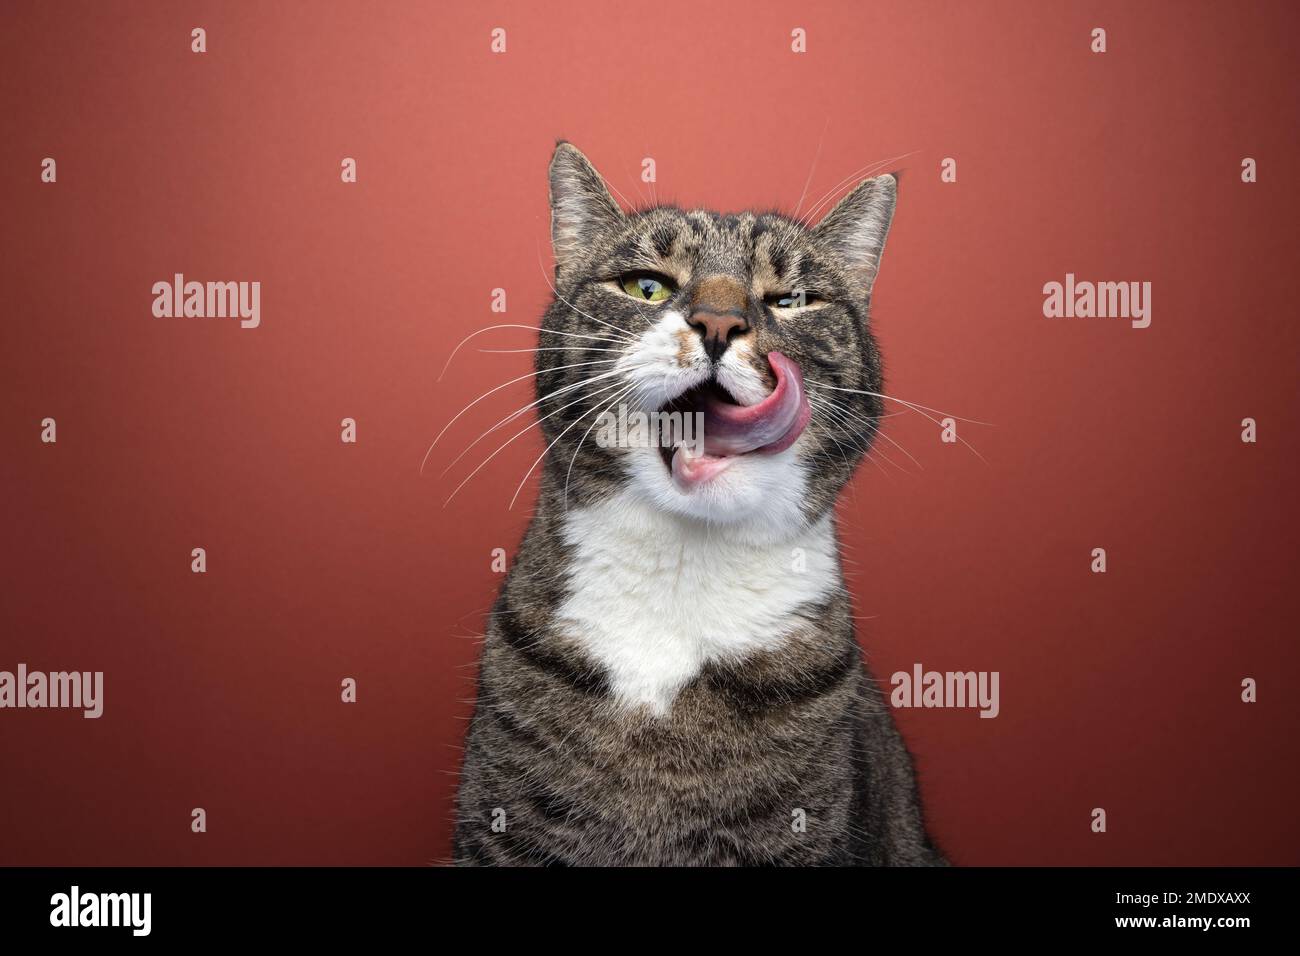 Primo piano di un gatto affamato che lecca delicatamente i suoi whisker mentre guarda direttamente nella fotocamera. Lo sfondo è di colore rosso intenso. Foto Stock